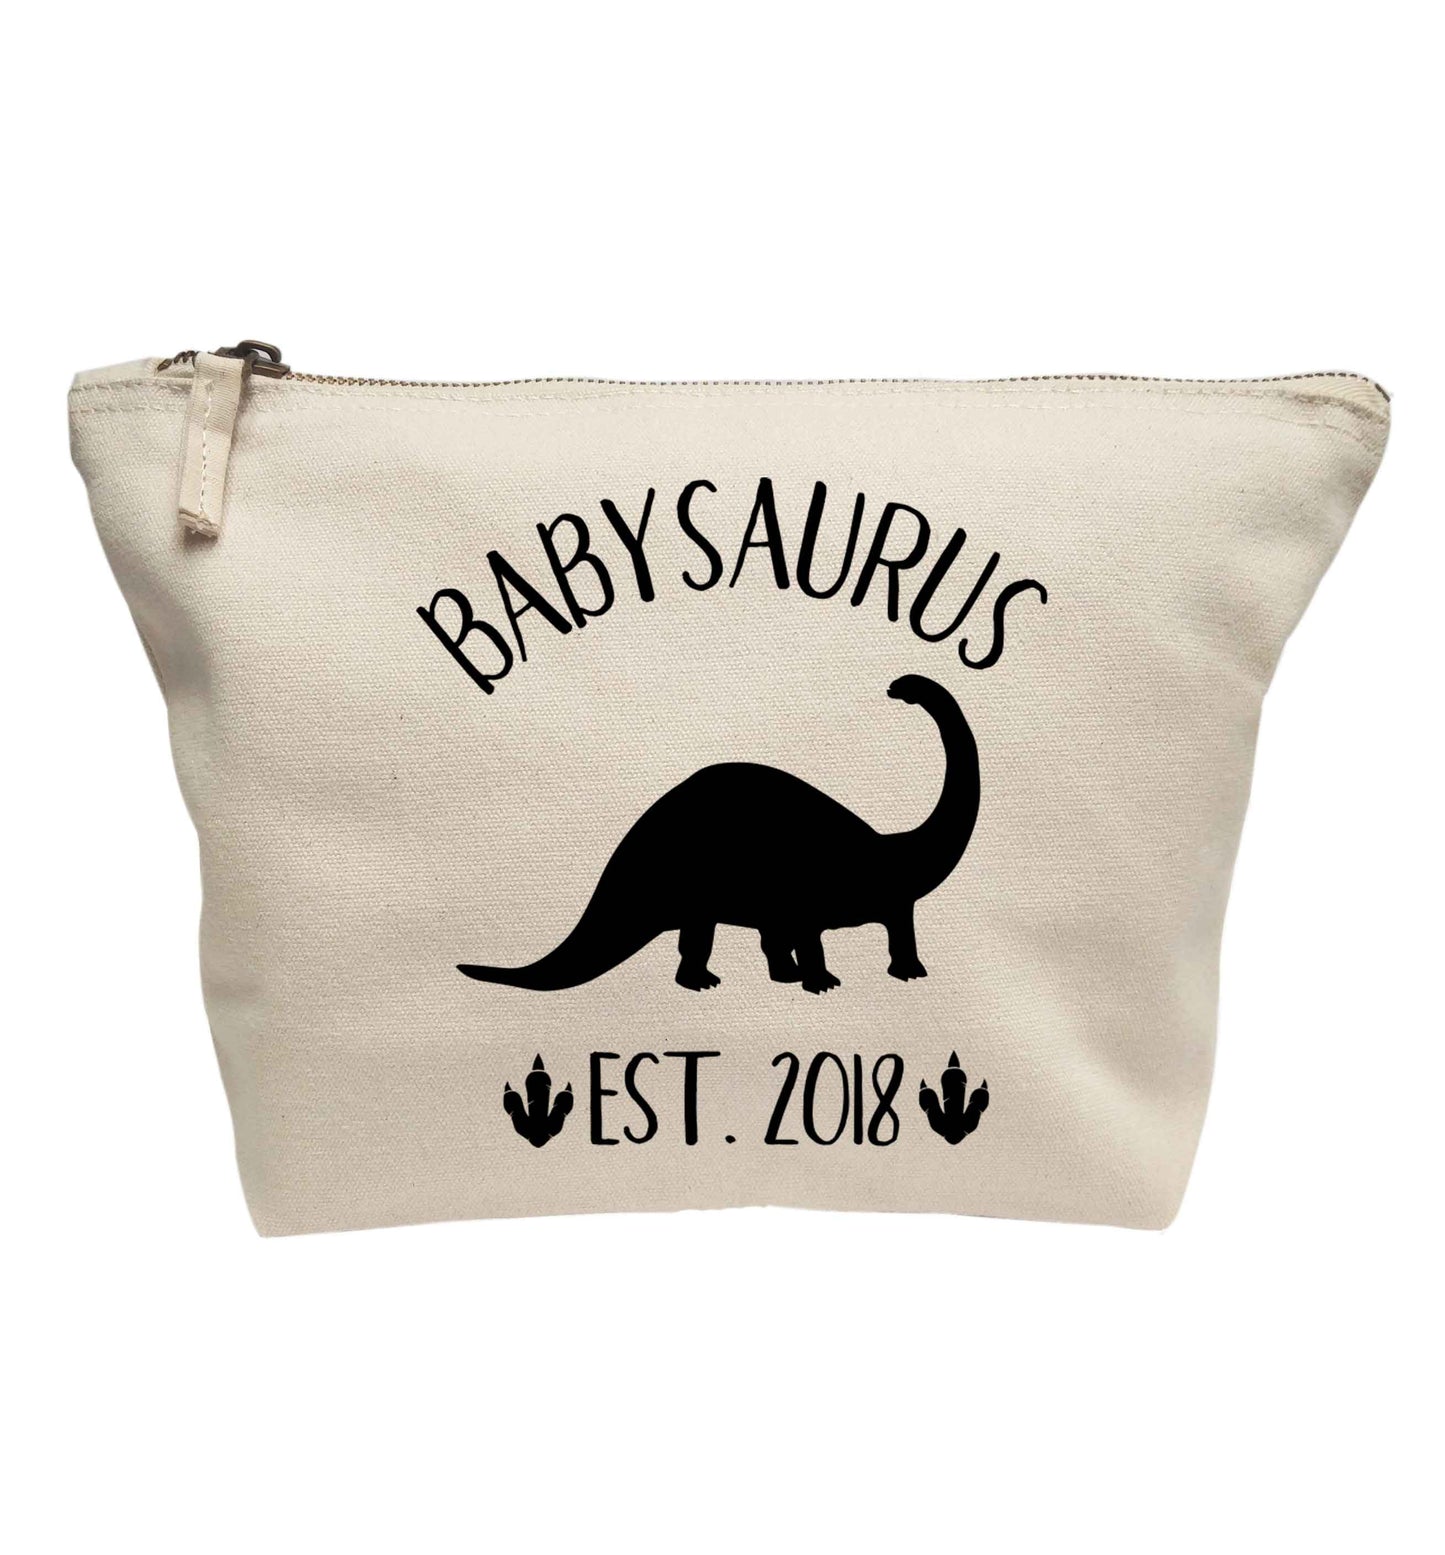 Personalised babysaurus since (custom date) | makeup / wash bag